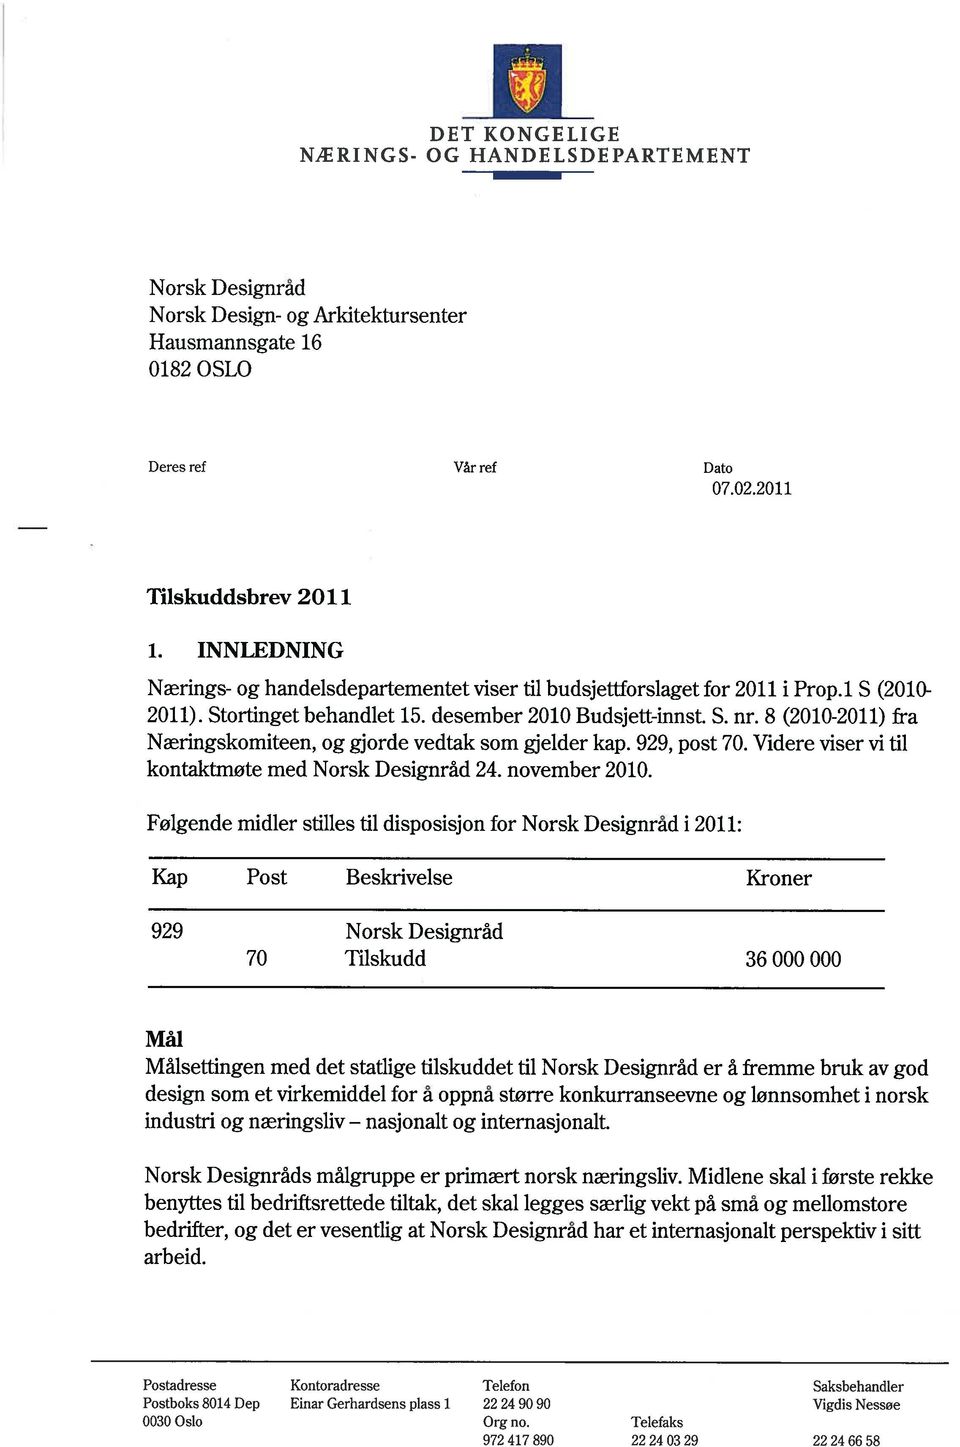 8 (2010-2011) fra Næringskomiteen, og gjorde vedtak som gjelder kap. 929, post 70. Videre viser vi til kontaktmøte med Norsk Designråd 24. november 2010.